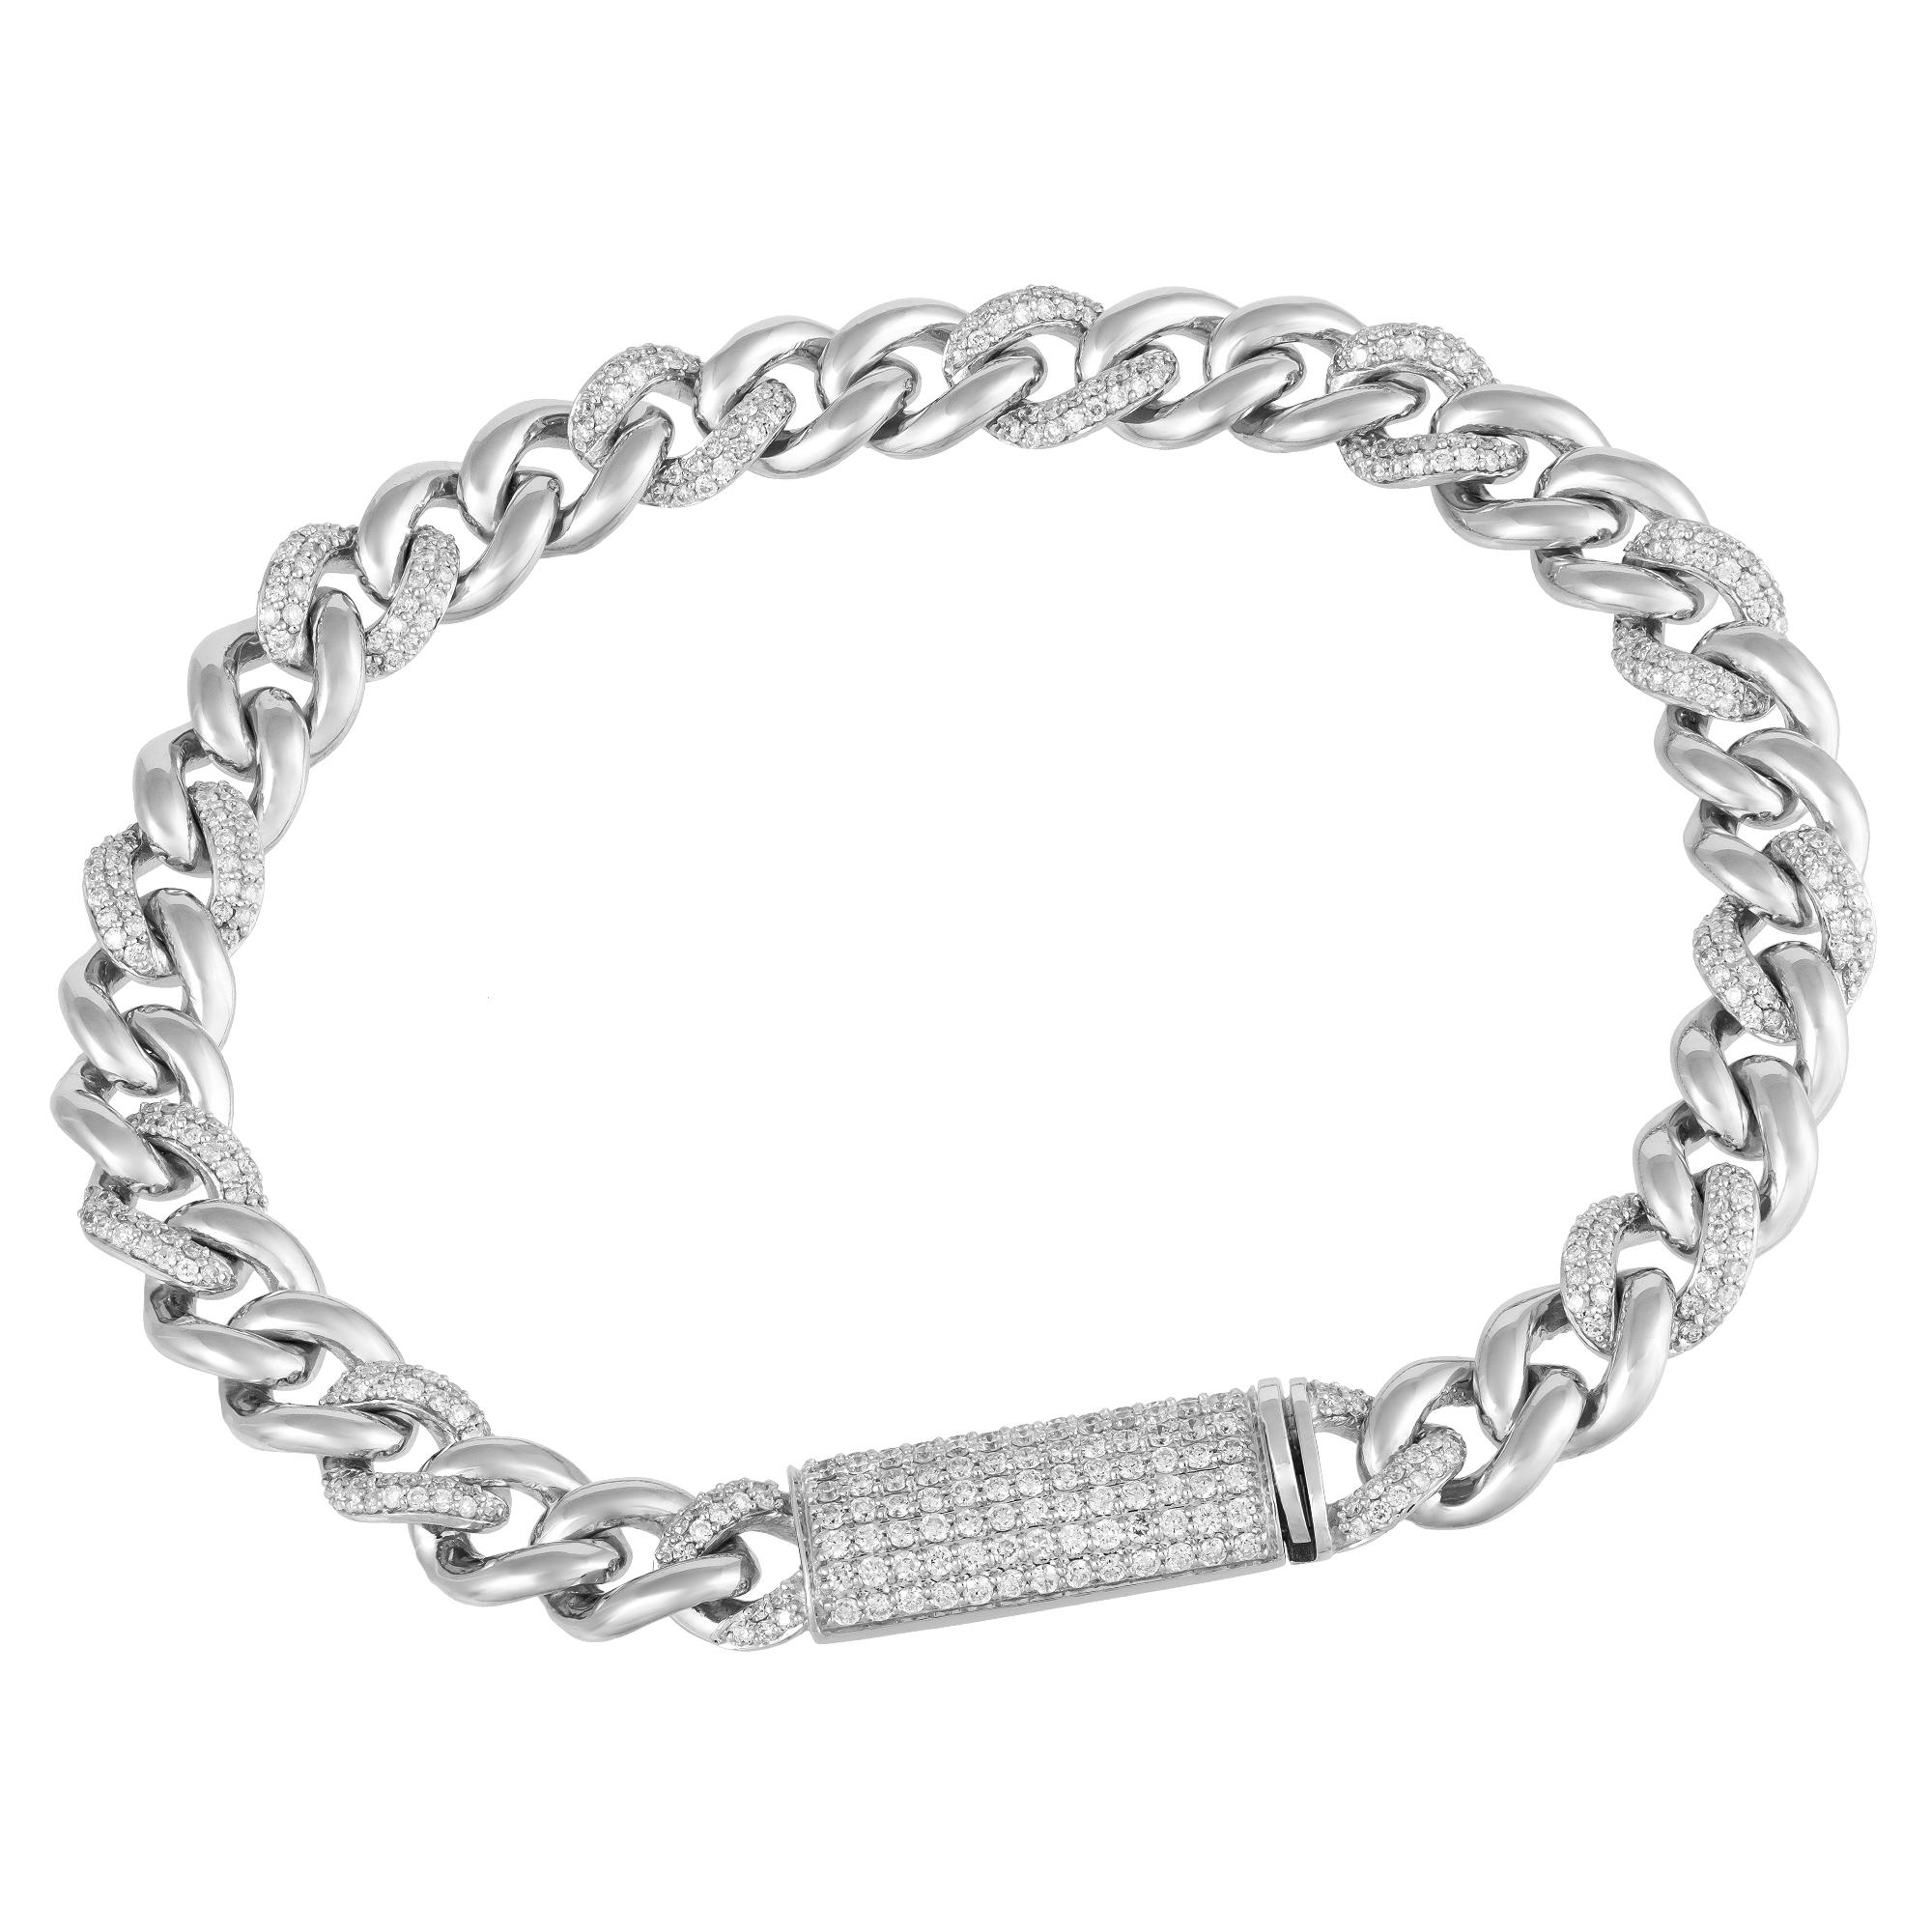 Women's Chain White Gold 18K Bracelet Diamond for Her For Sale